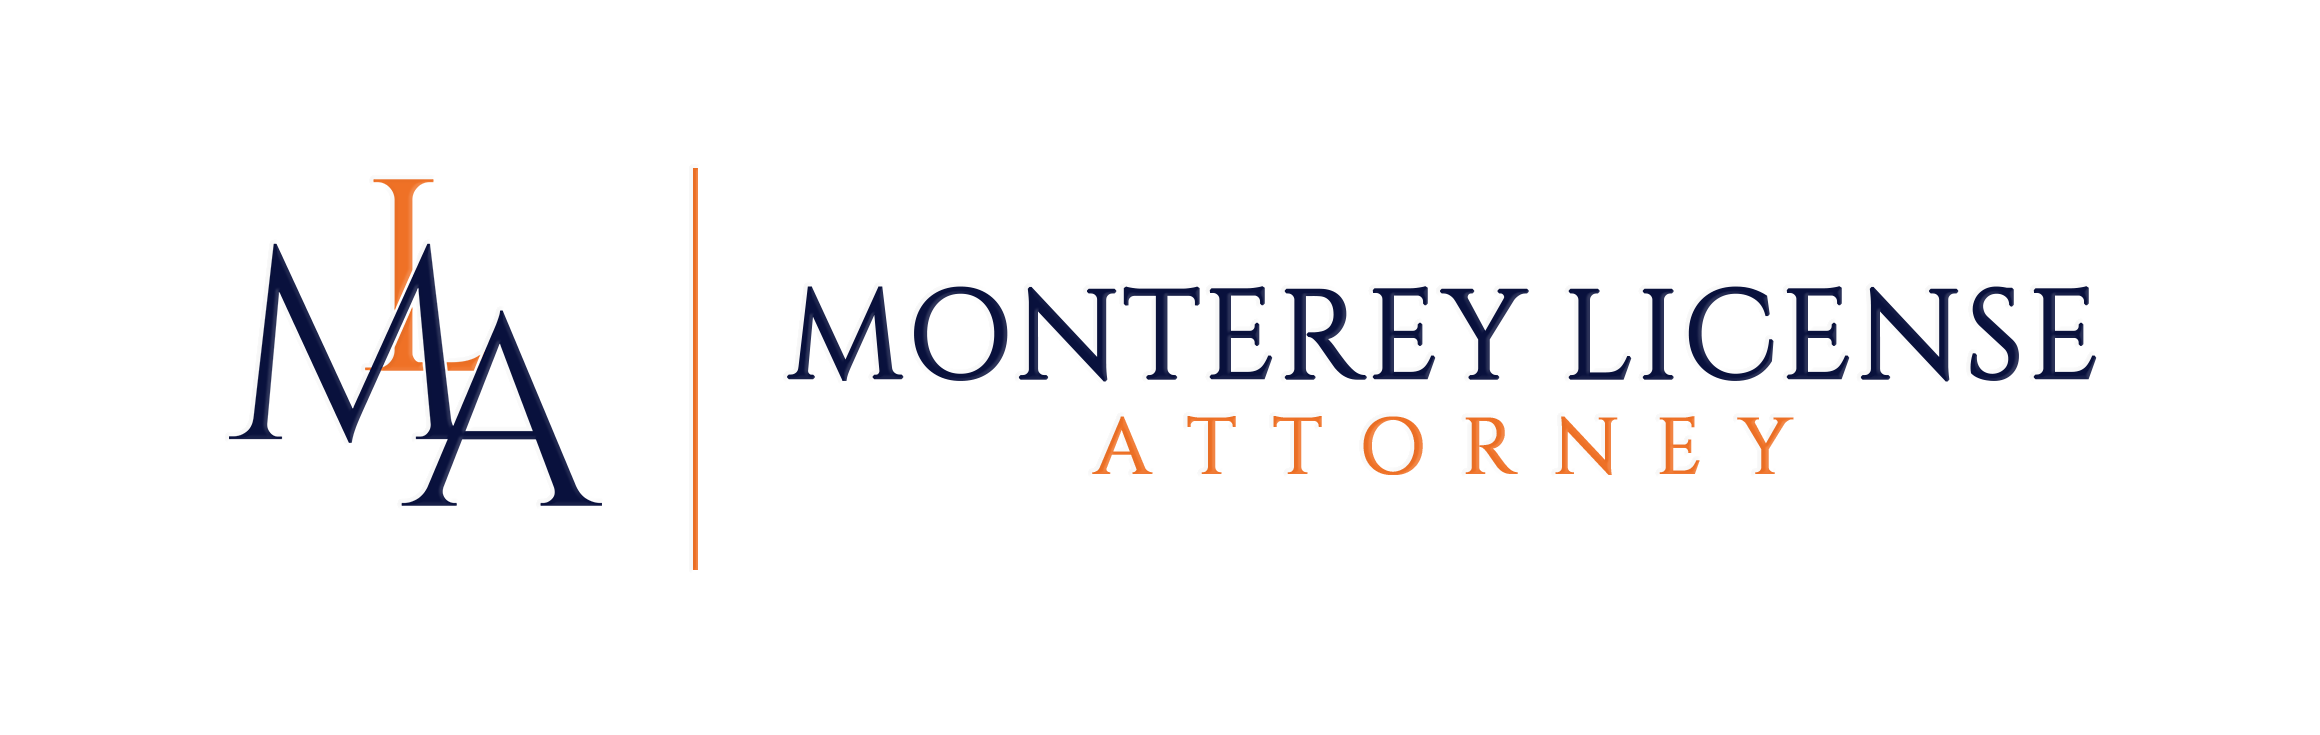 Monterey License Attorney logo